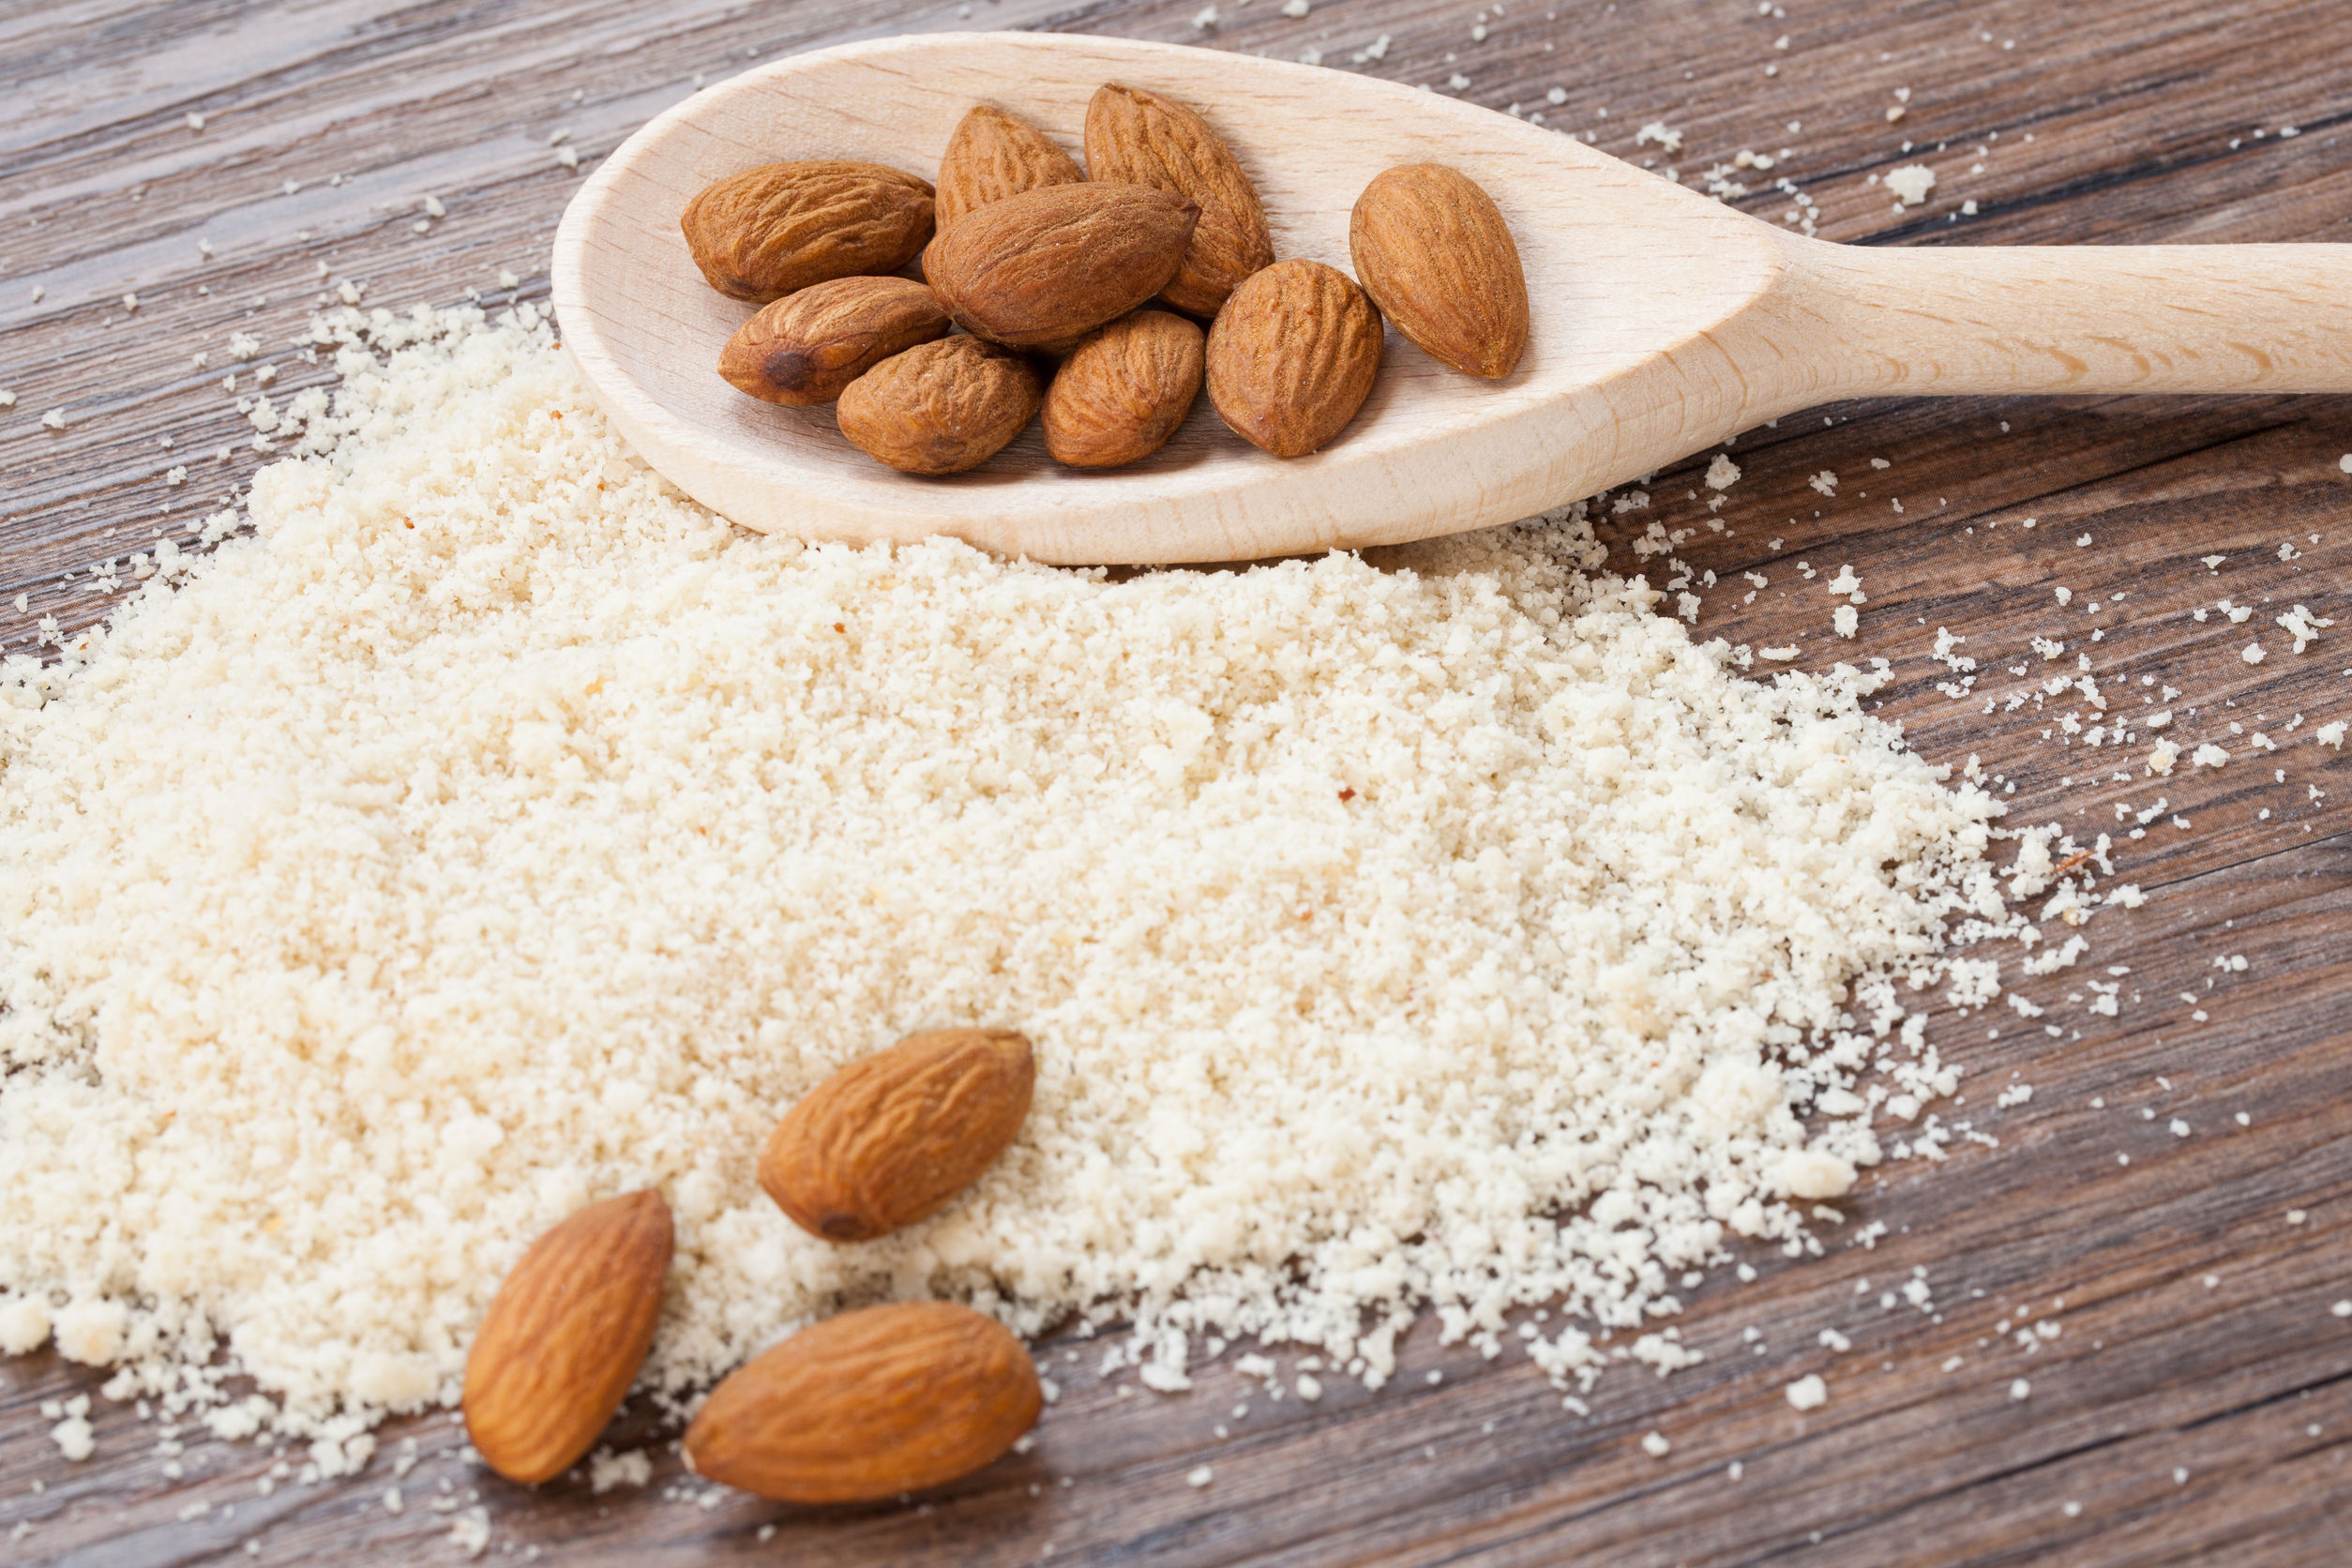 31820730 - almond flour, almonds in a dark wood background